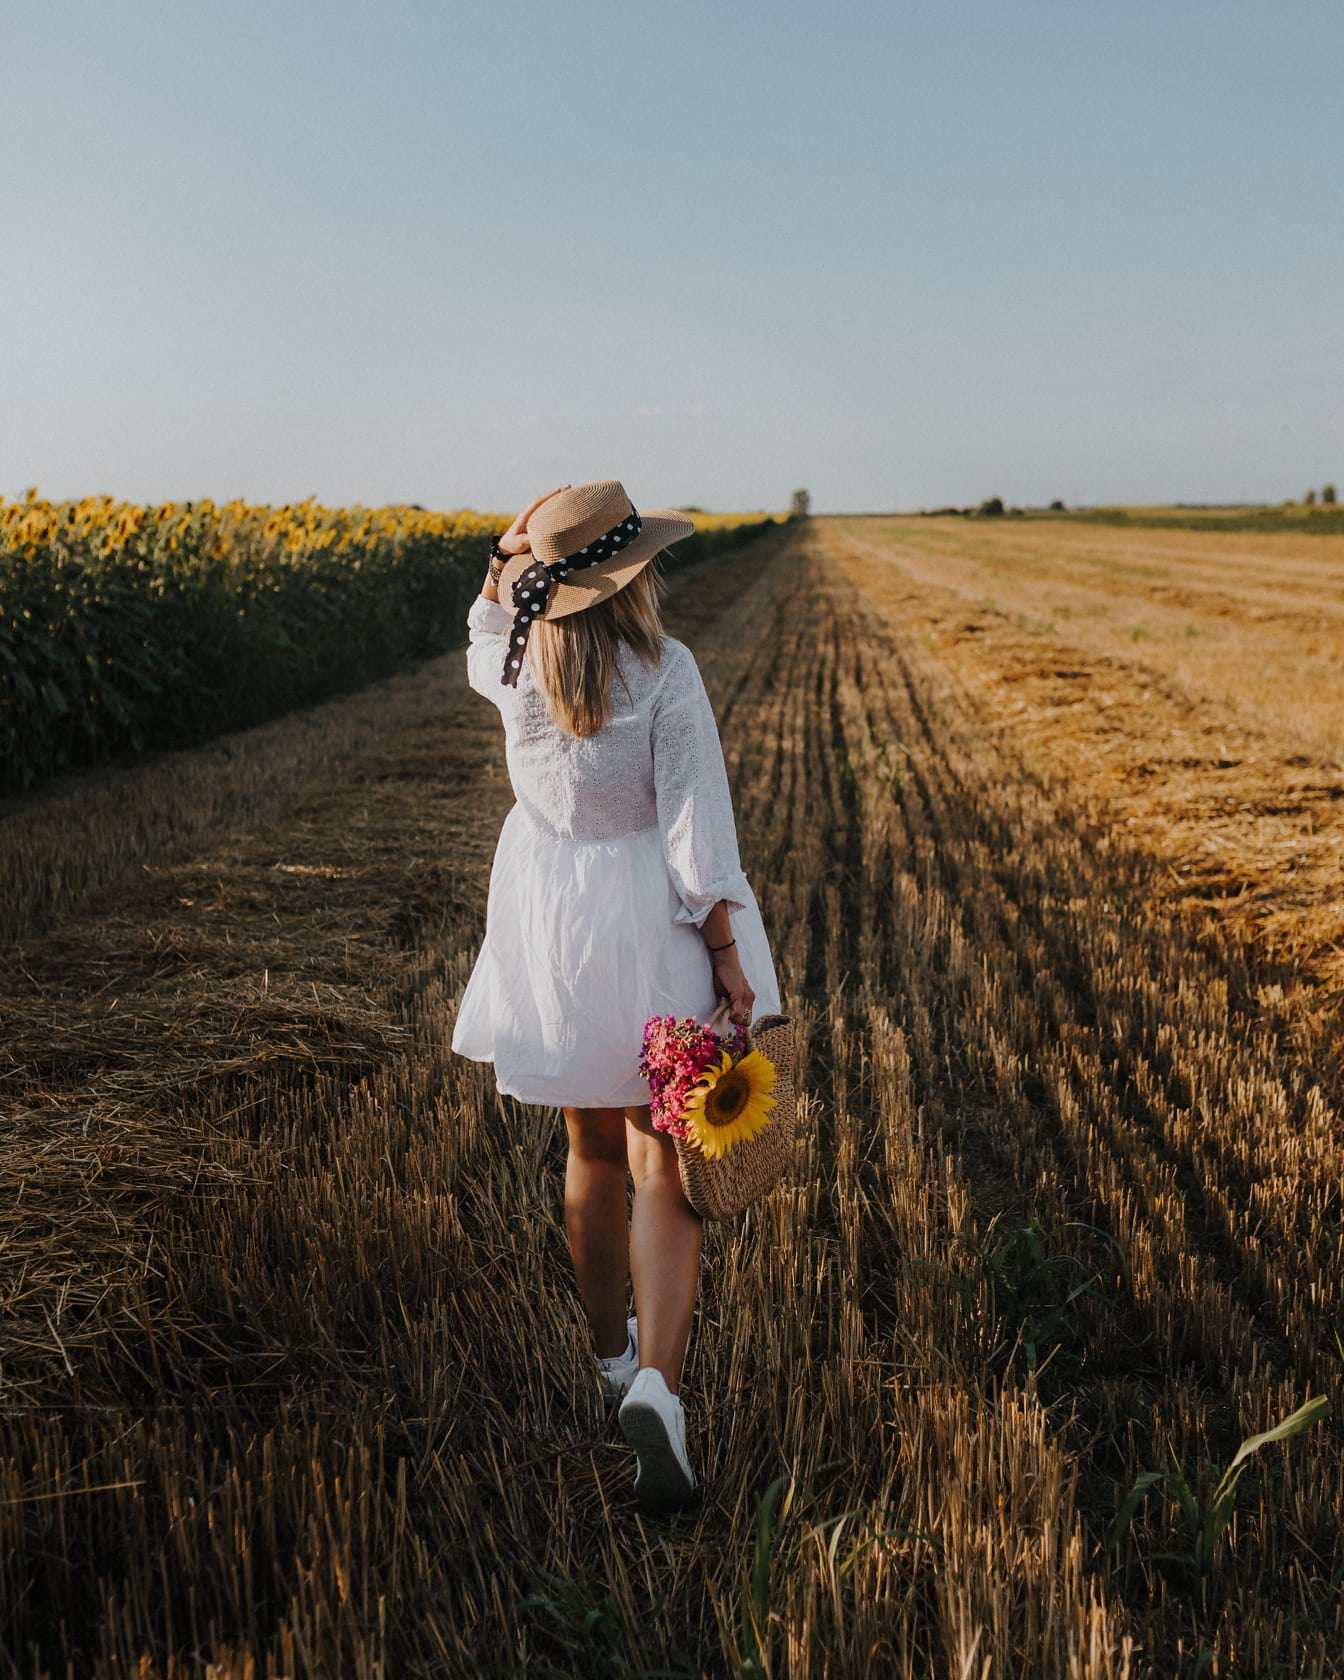 Белое платье и шляпа на женщине на пшеничном поле